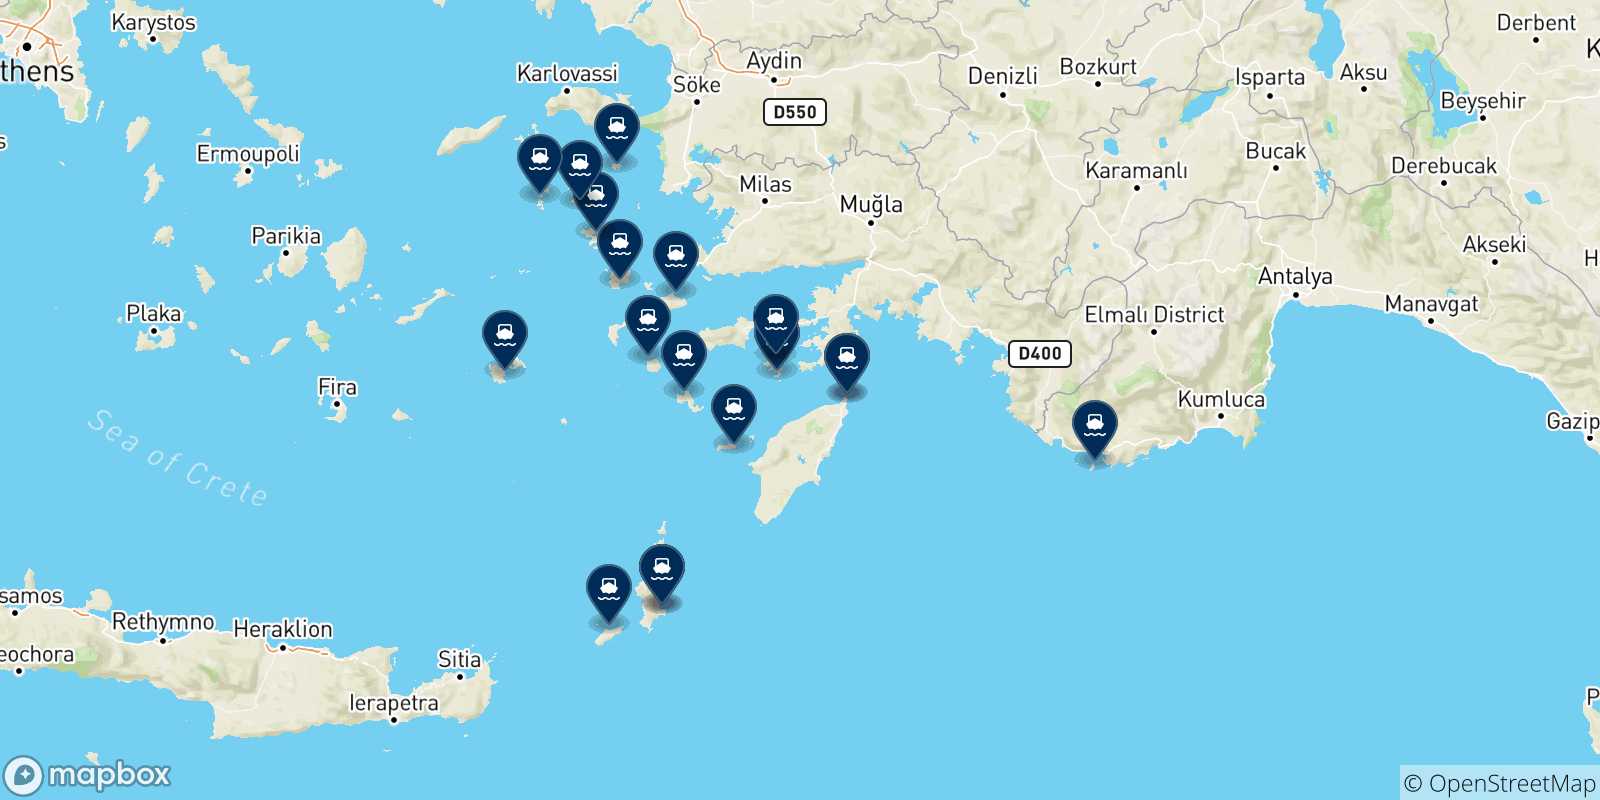 Mappa delle possibili rotte tra Rodi e le Isole Dodecaneso